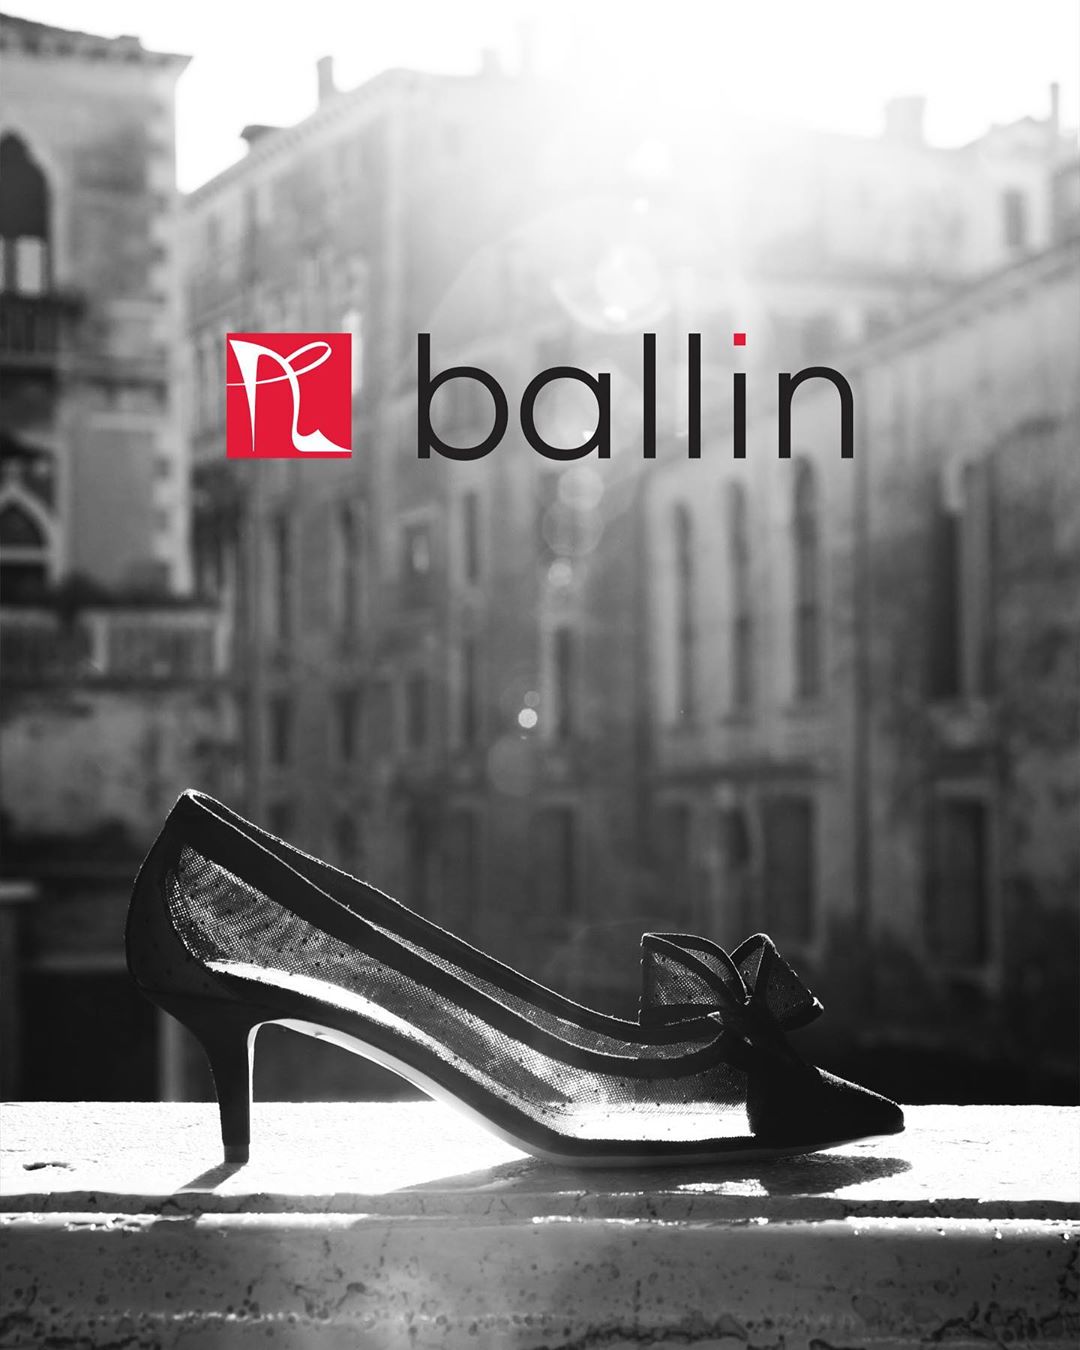 Ballin Shoes - Italian handmade shoes. 
#Ballin